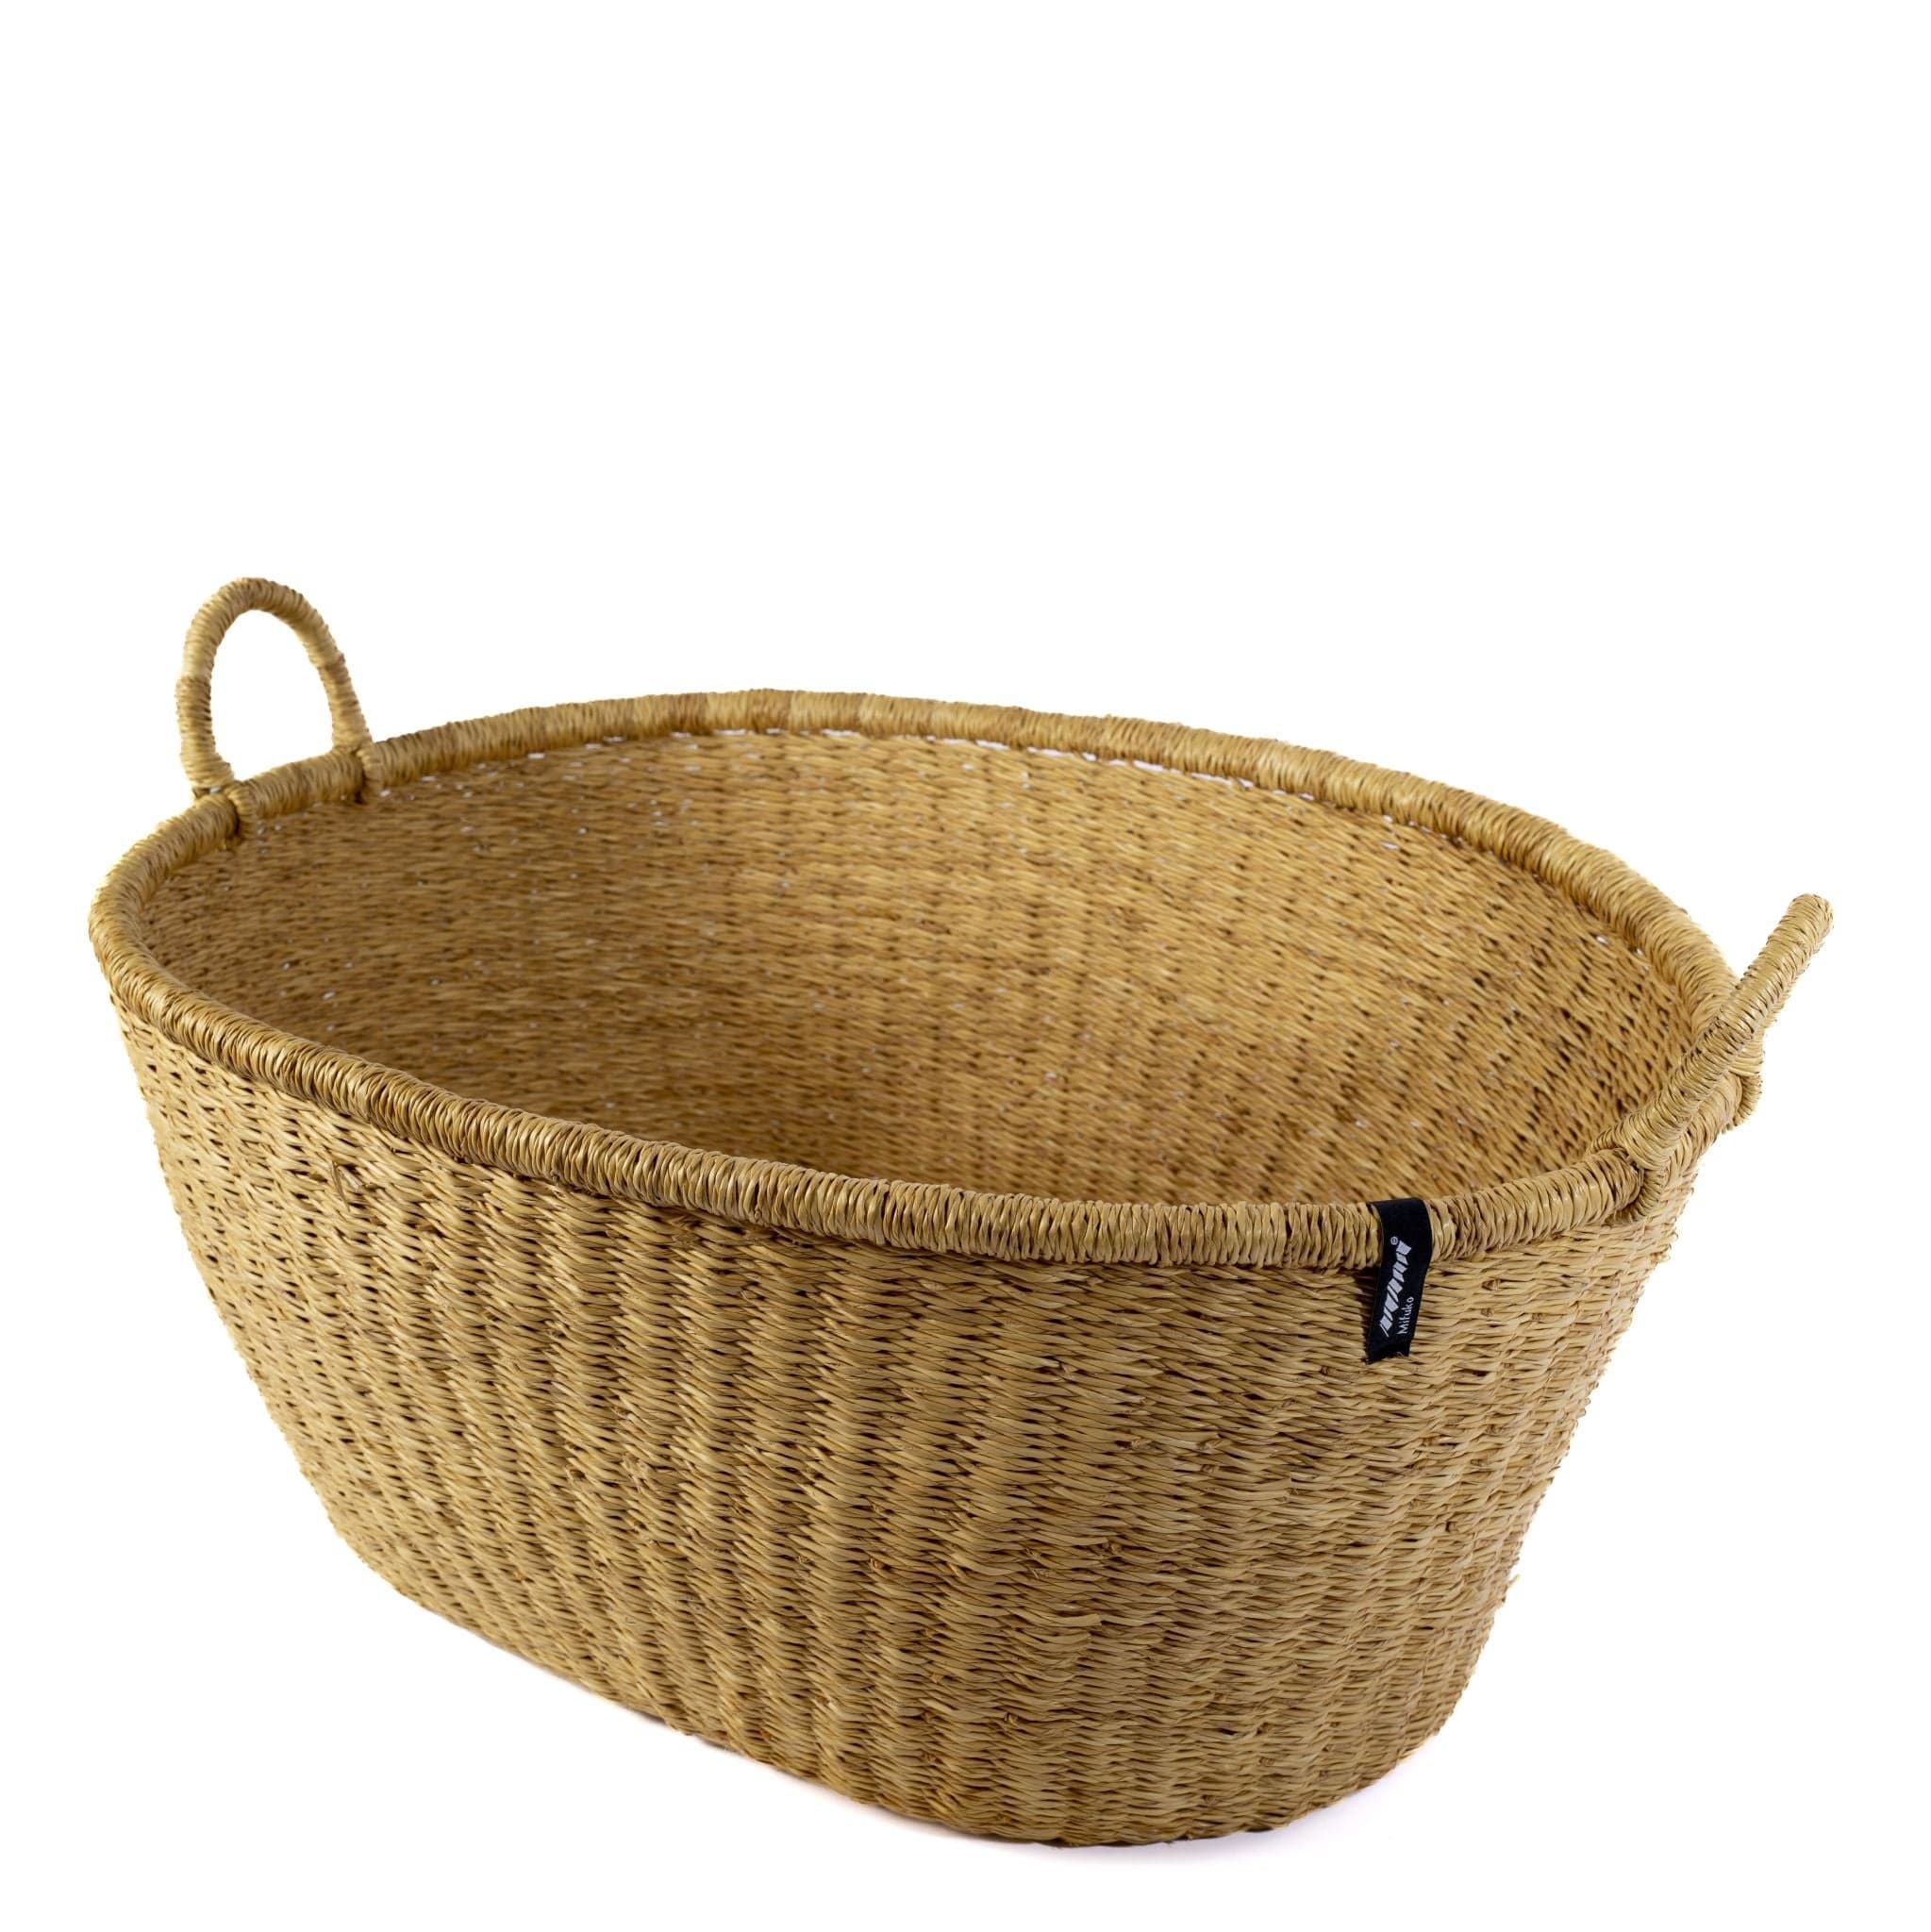 Mifuko Elephant grass Large basket with handle Bolga laundry basket XXL